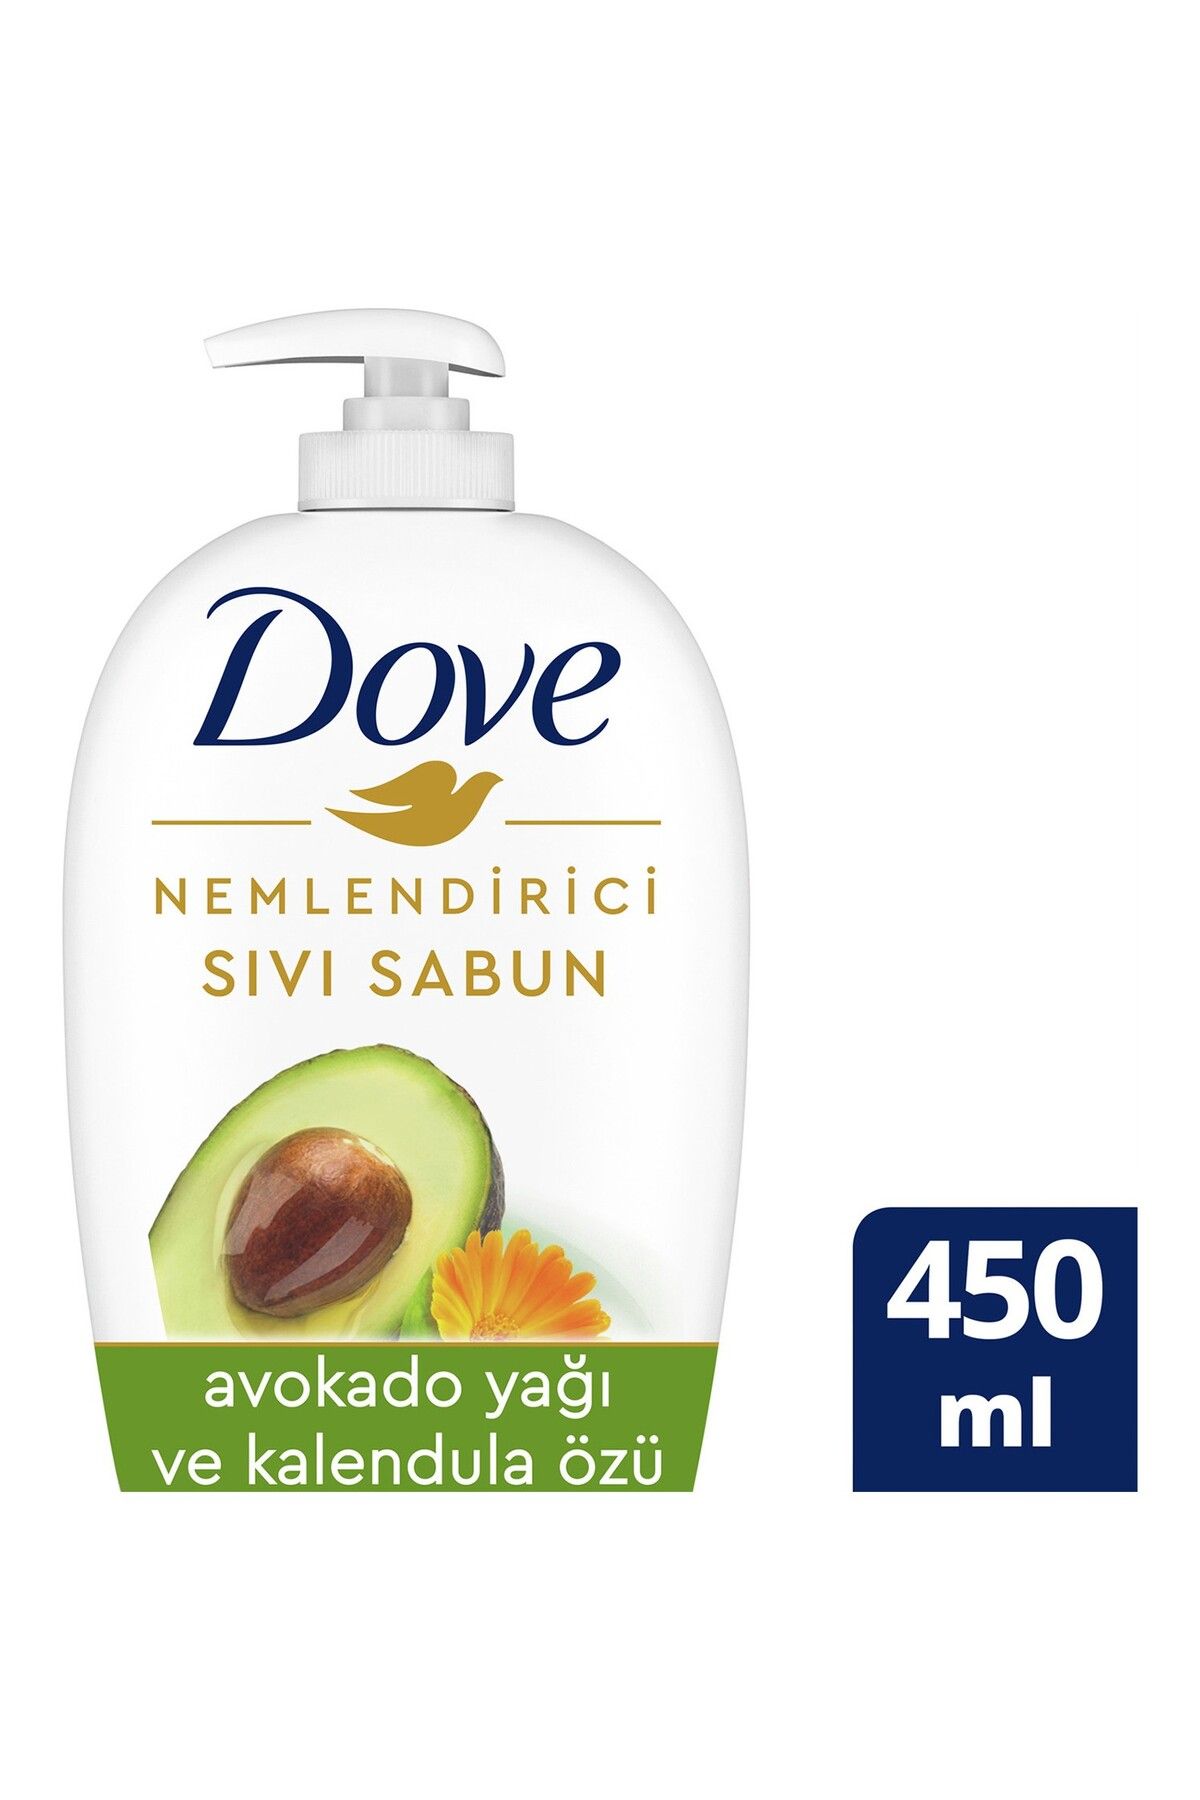 Dove Avokado Yağı ve Kalendula Özü Nemlendirici Sıvı Sabun 450 ml